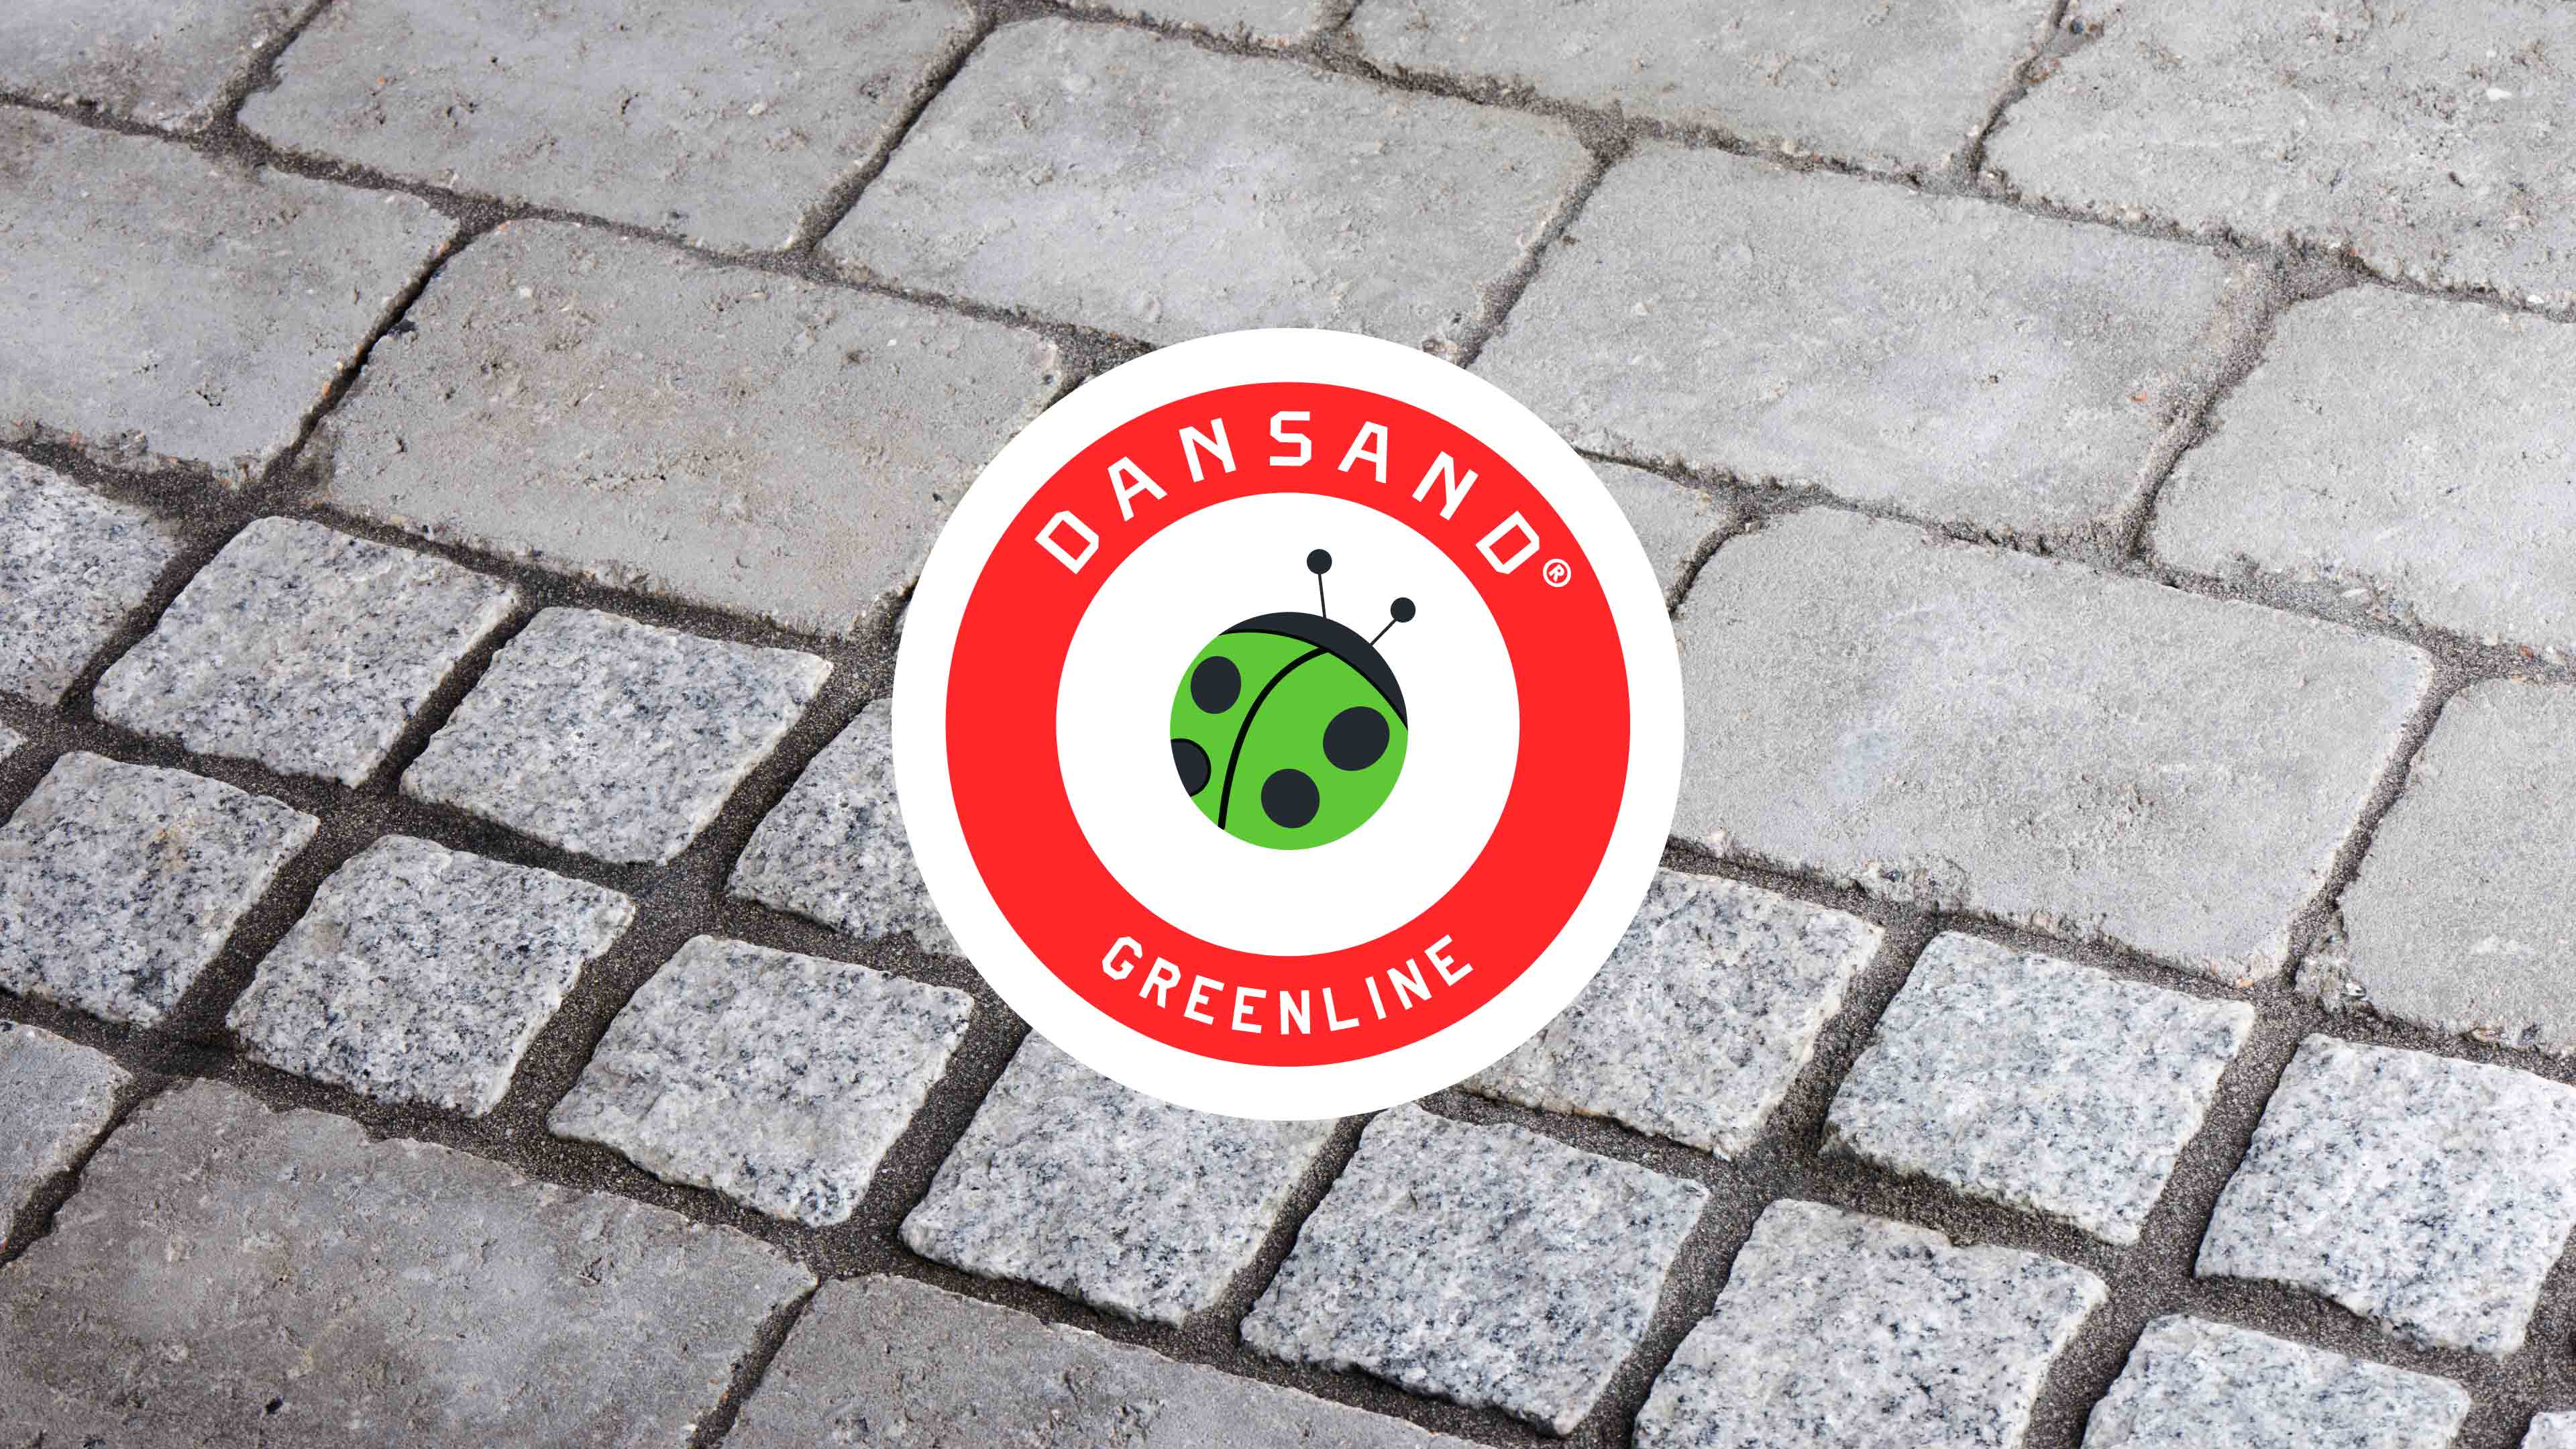 Pflastersteine im Hintergrund; rundes, rotes DANSAND-Logo mit grünem Käfer im Vordergrund